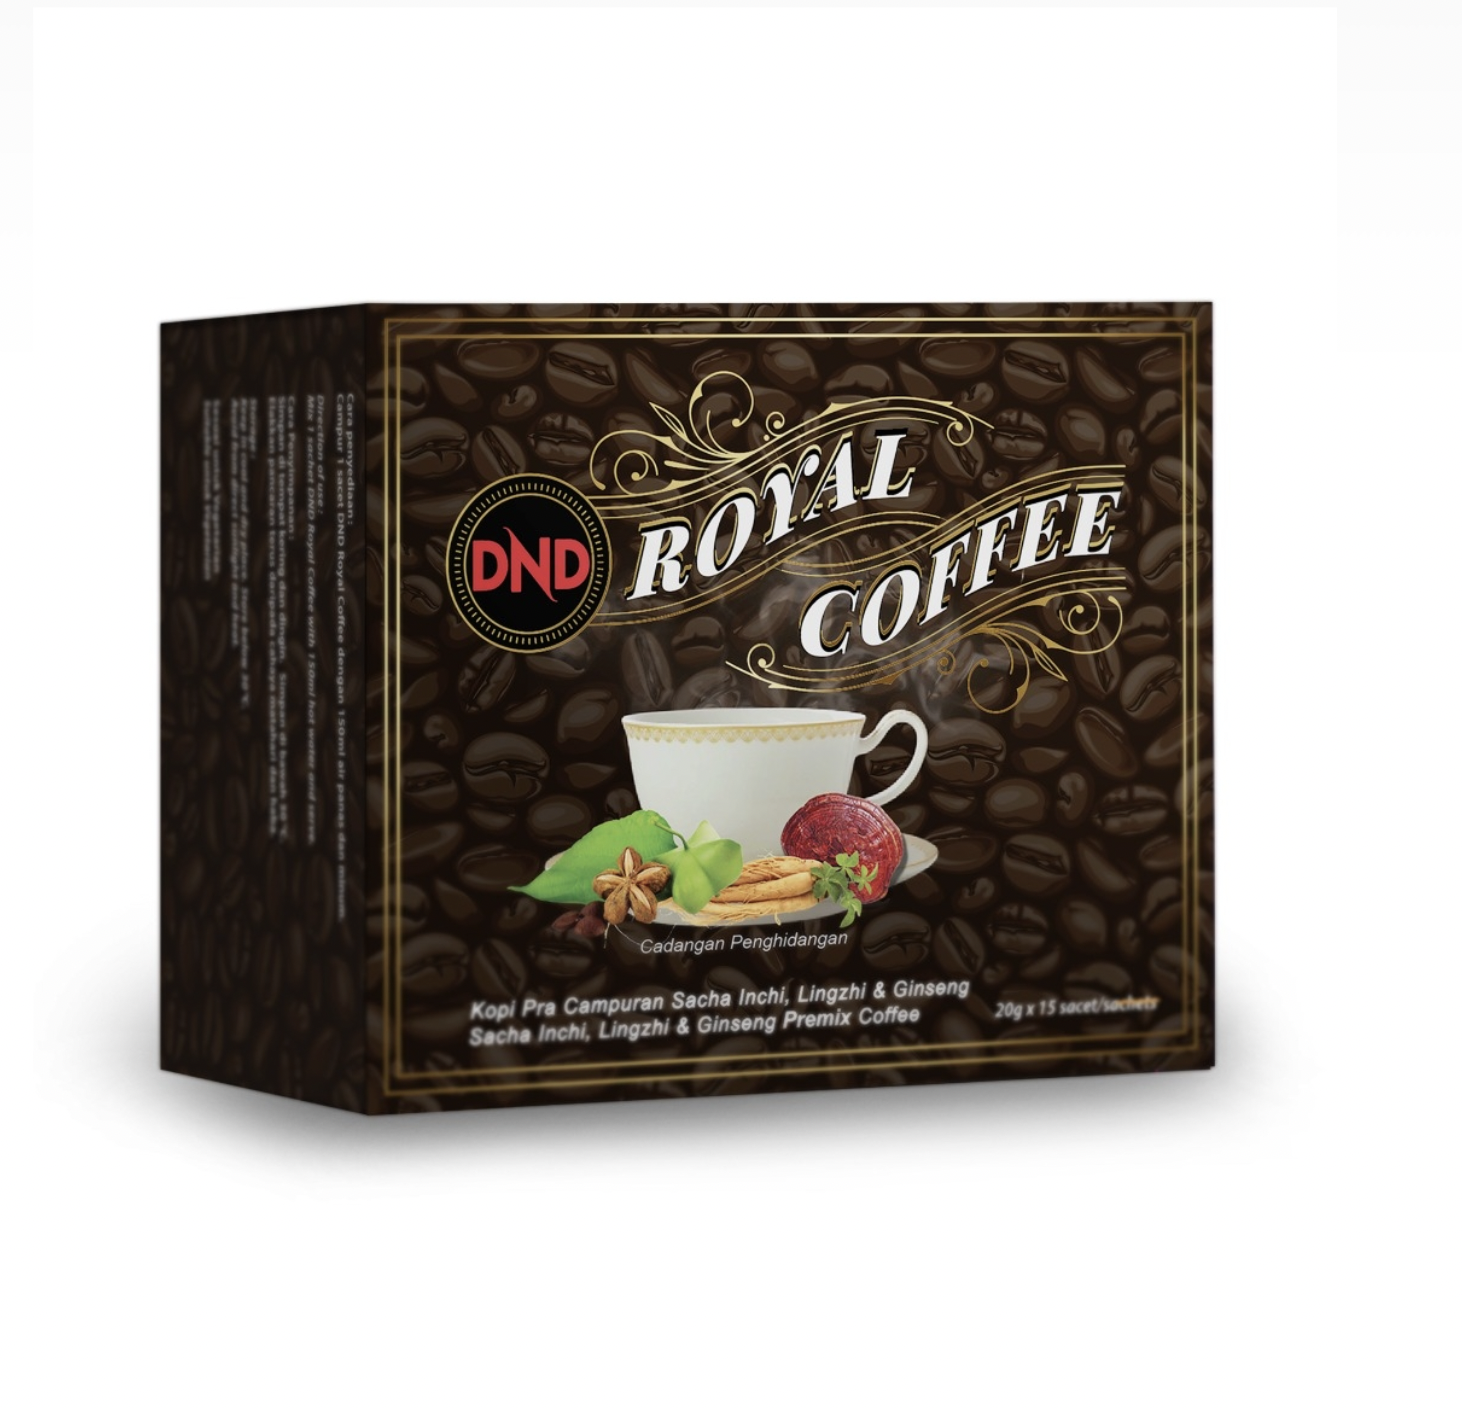 DND-ROYAL-COFFEE-20G-X-15-SACHETS